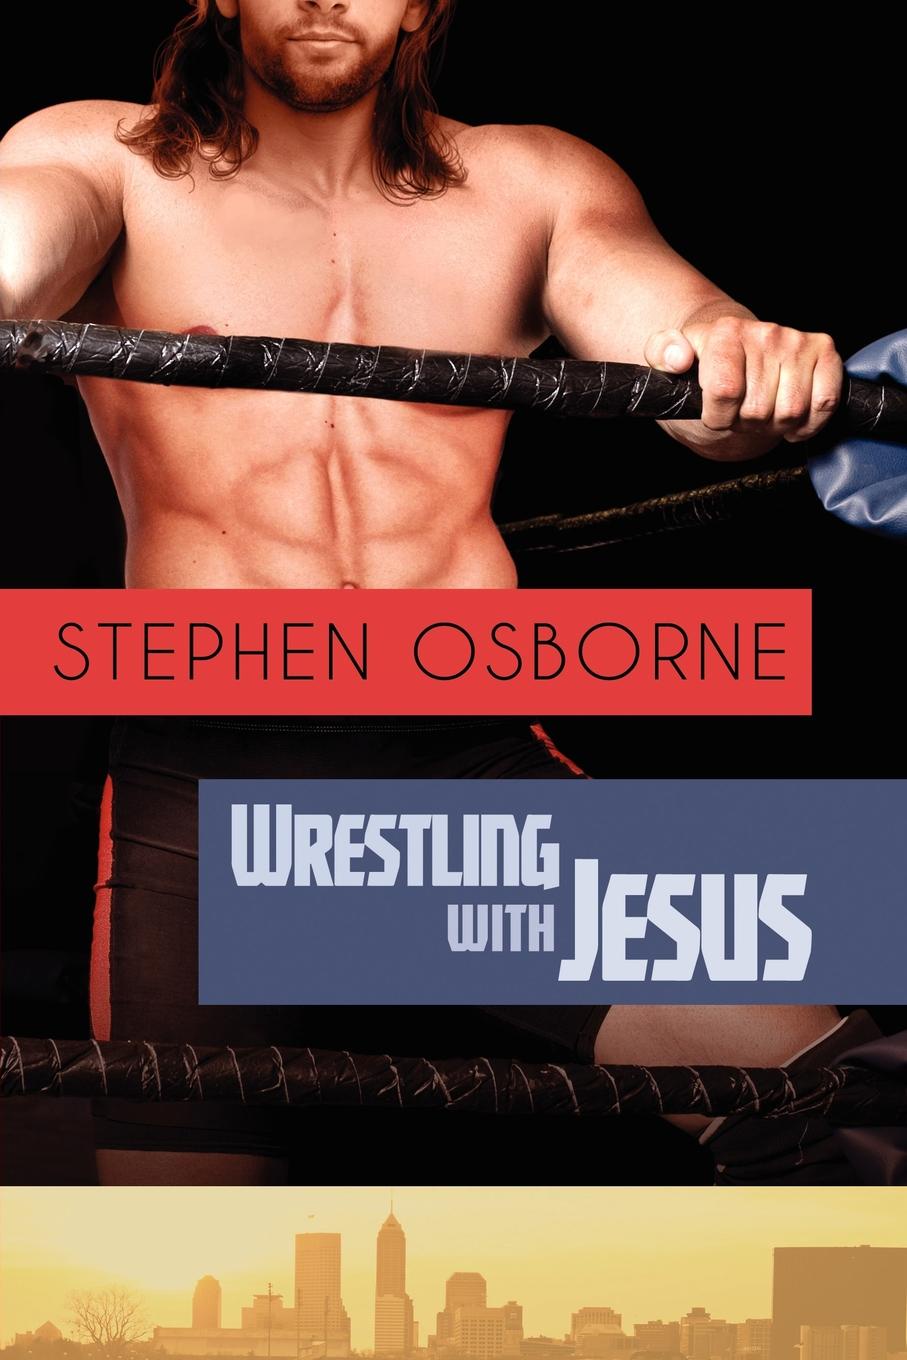 Stephen Osborne Wrestling with Jesus